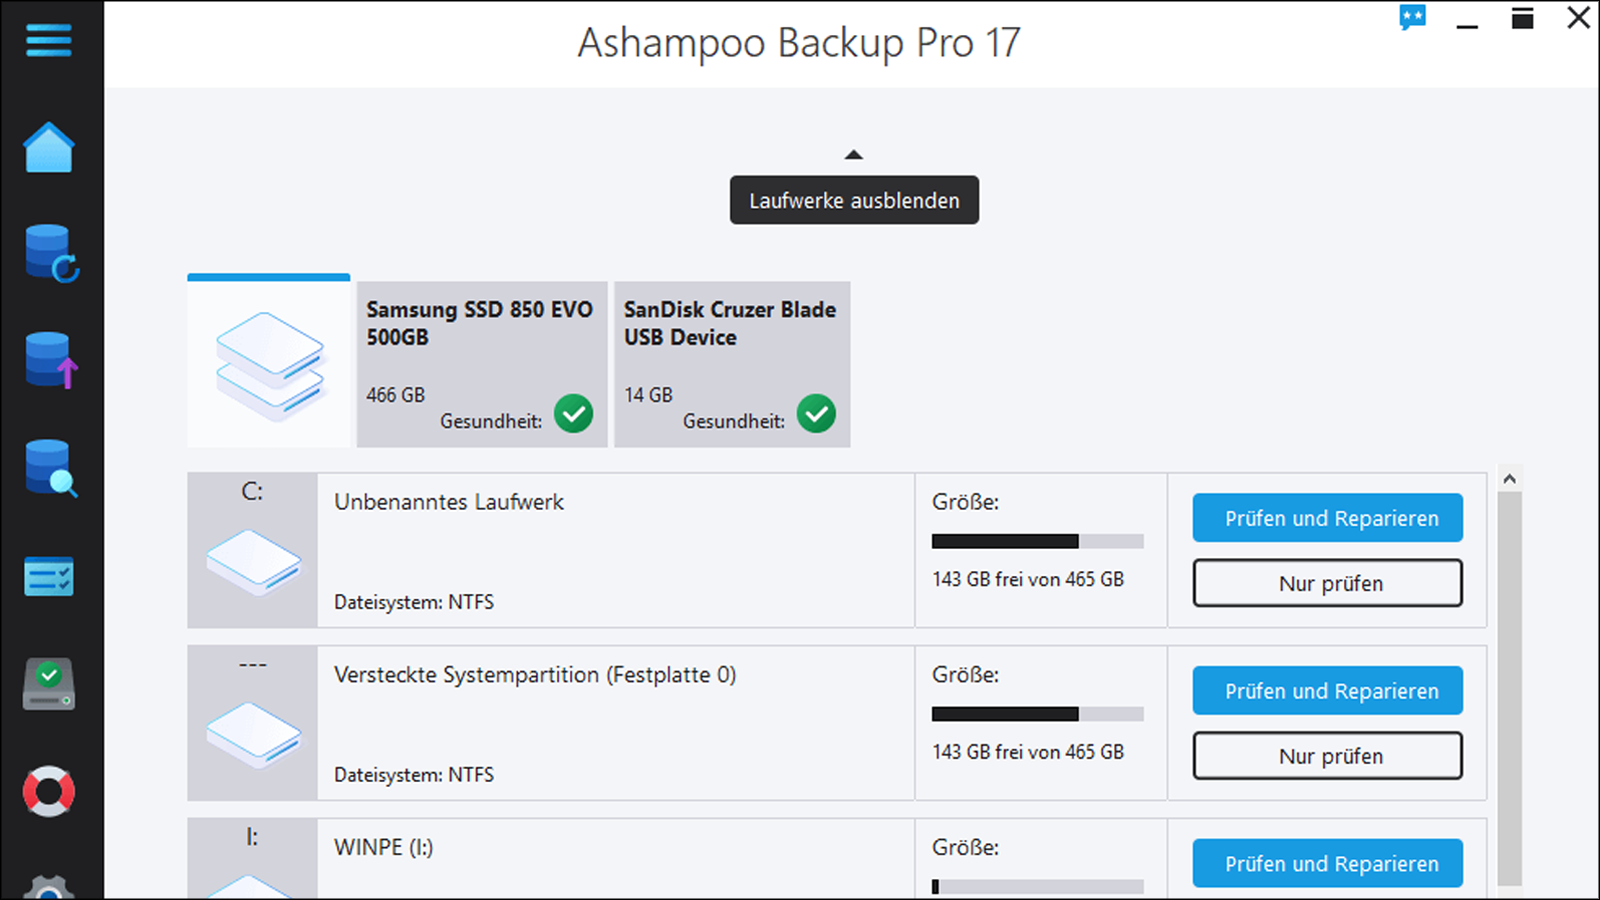 Ashampoo Backup Pro 17: Einfach und übersichtlich